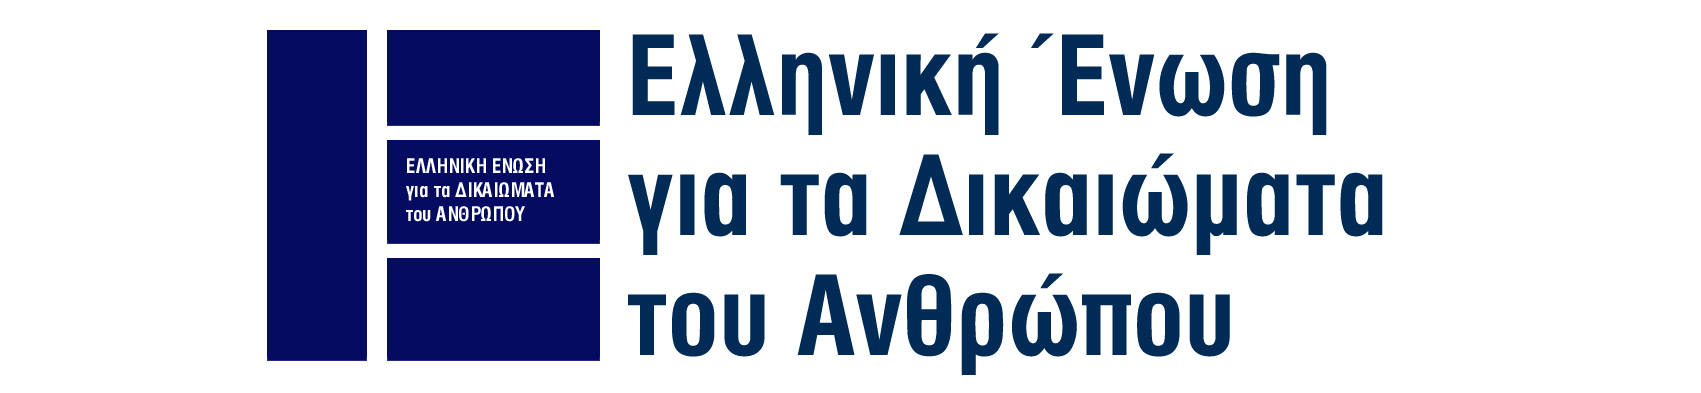 Πρόταση σχεδίου νόµου «Κώδικας Ελληνικής Ιθαγένειας» ΠΕΡΙΕΧΟΜΕΝΑ Περίληψη Αιτιολογικής έκθεσης του προτεινόµενου σχεδίου Νέου Κώδικα Ελληνικής Ιθαγένειας της Ελληνικής Ένωσης για τα ικαιώµατα του